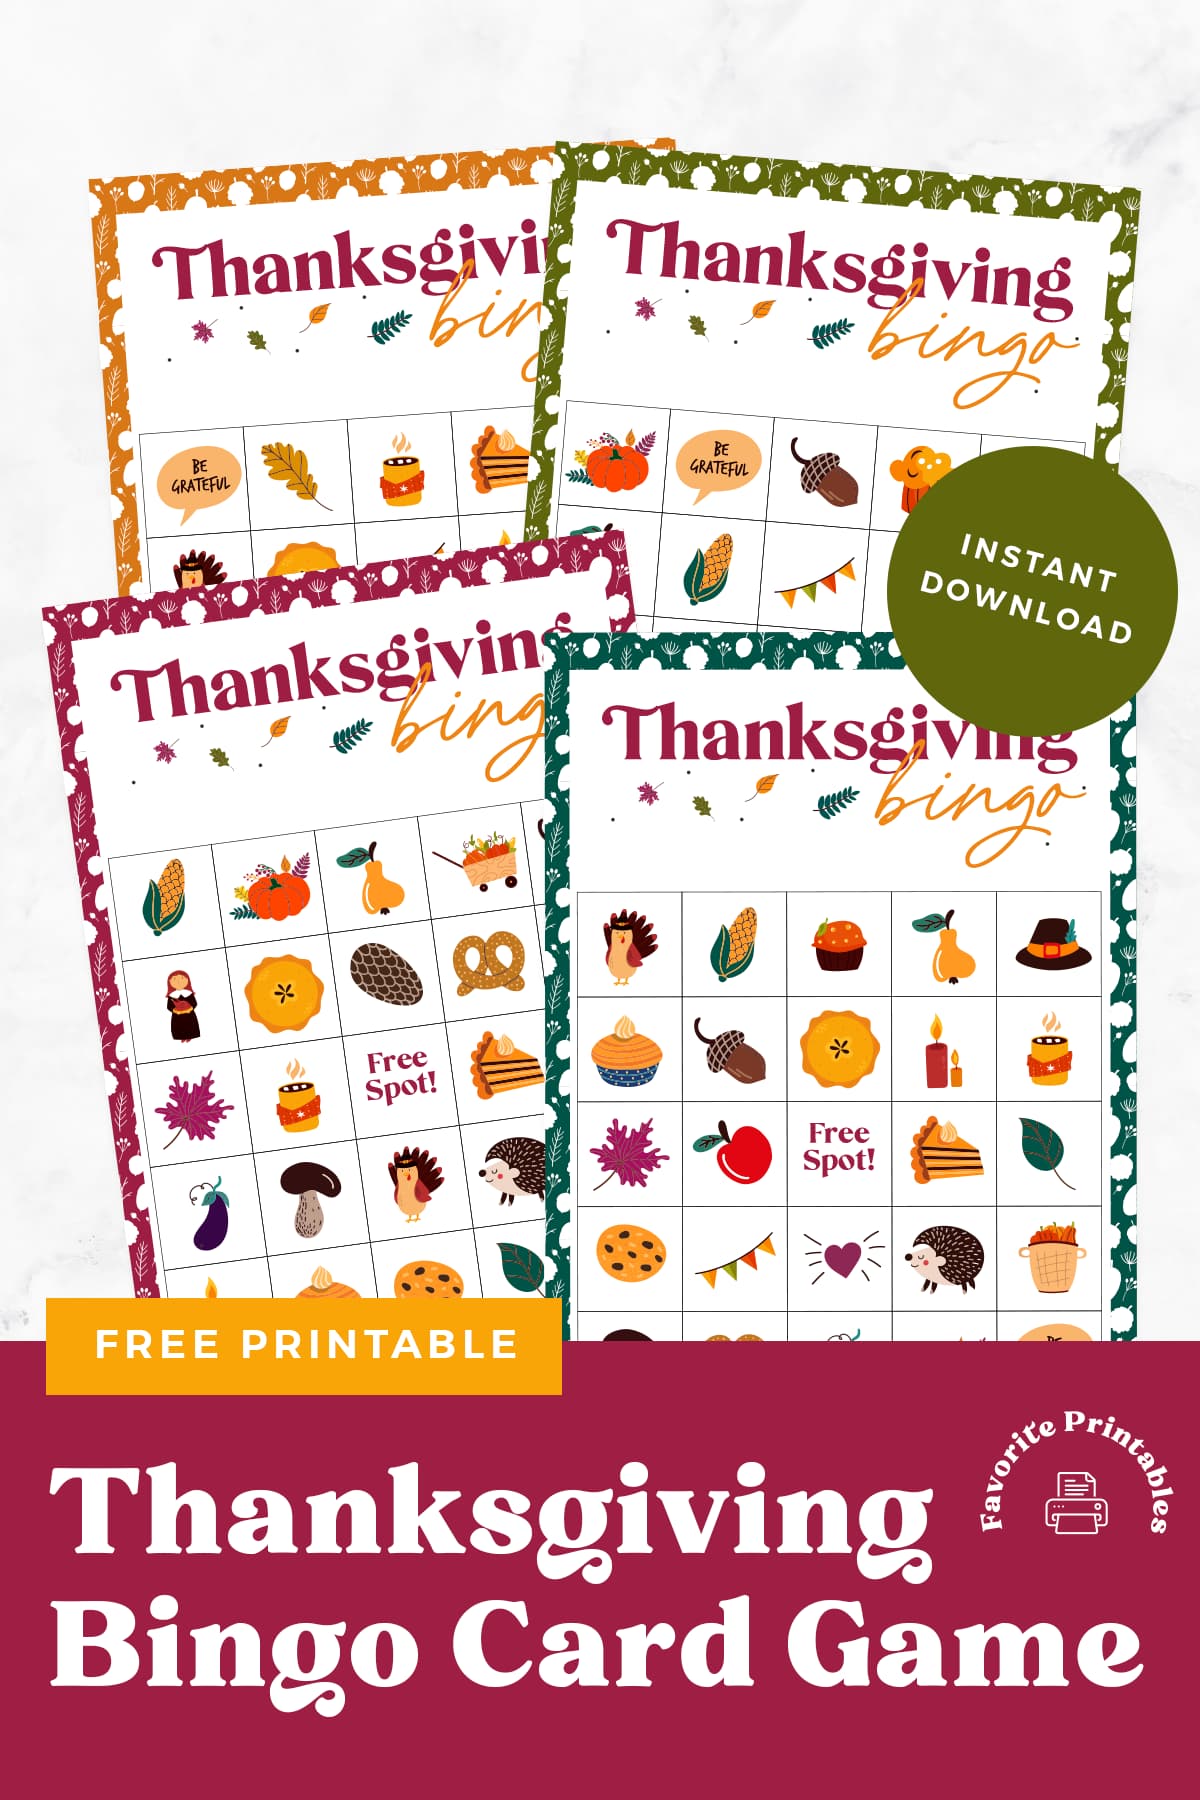 Free printable Thanksgiving bingo cards pin.